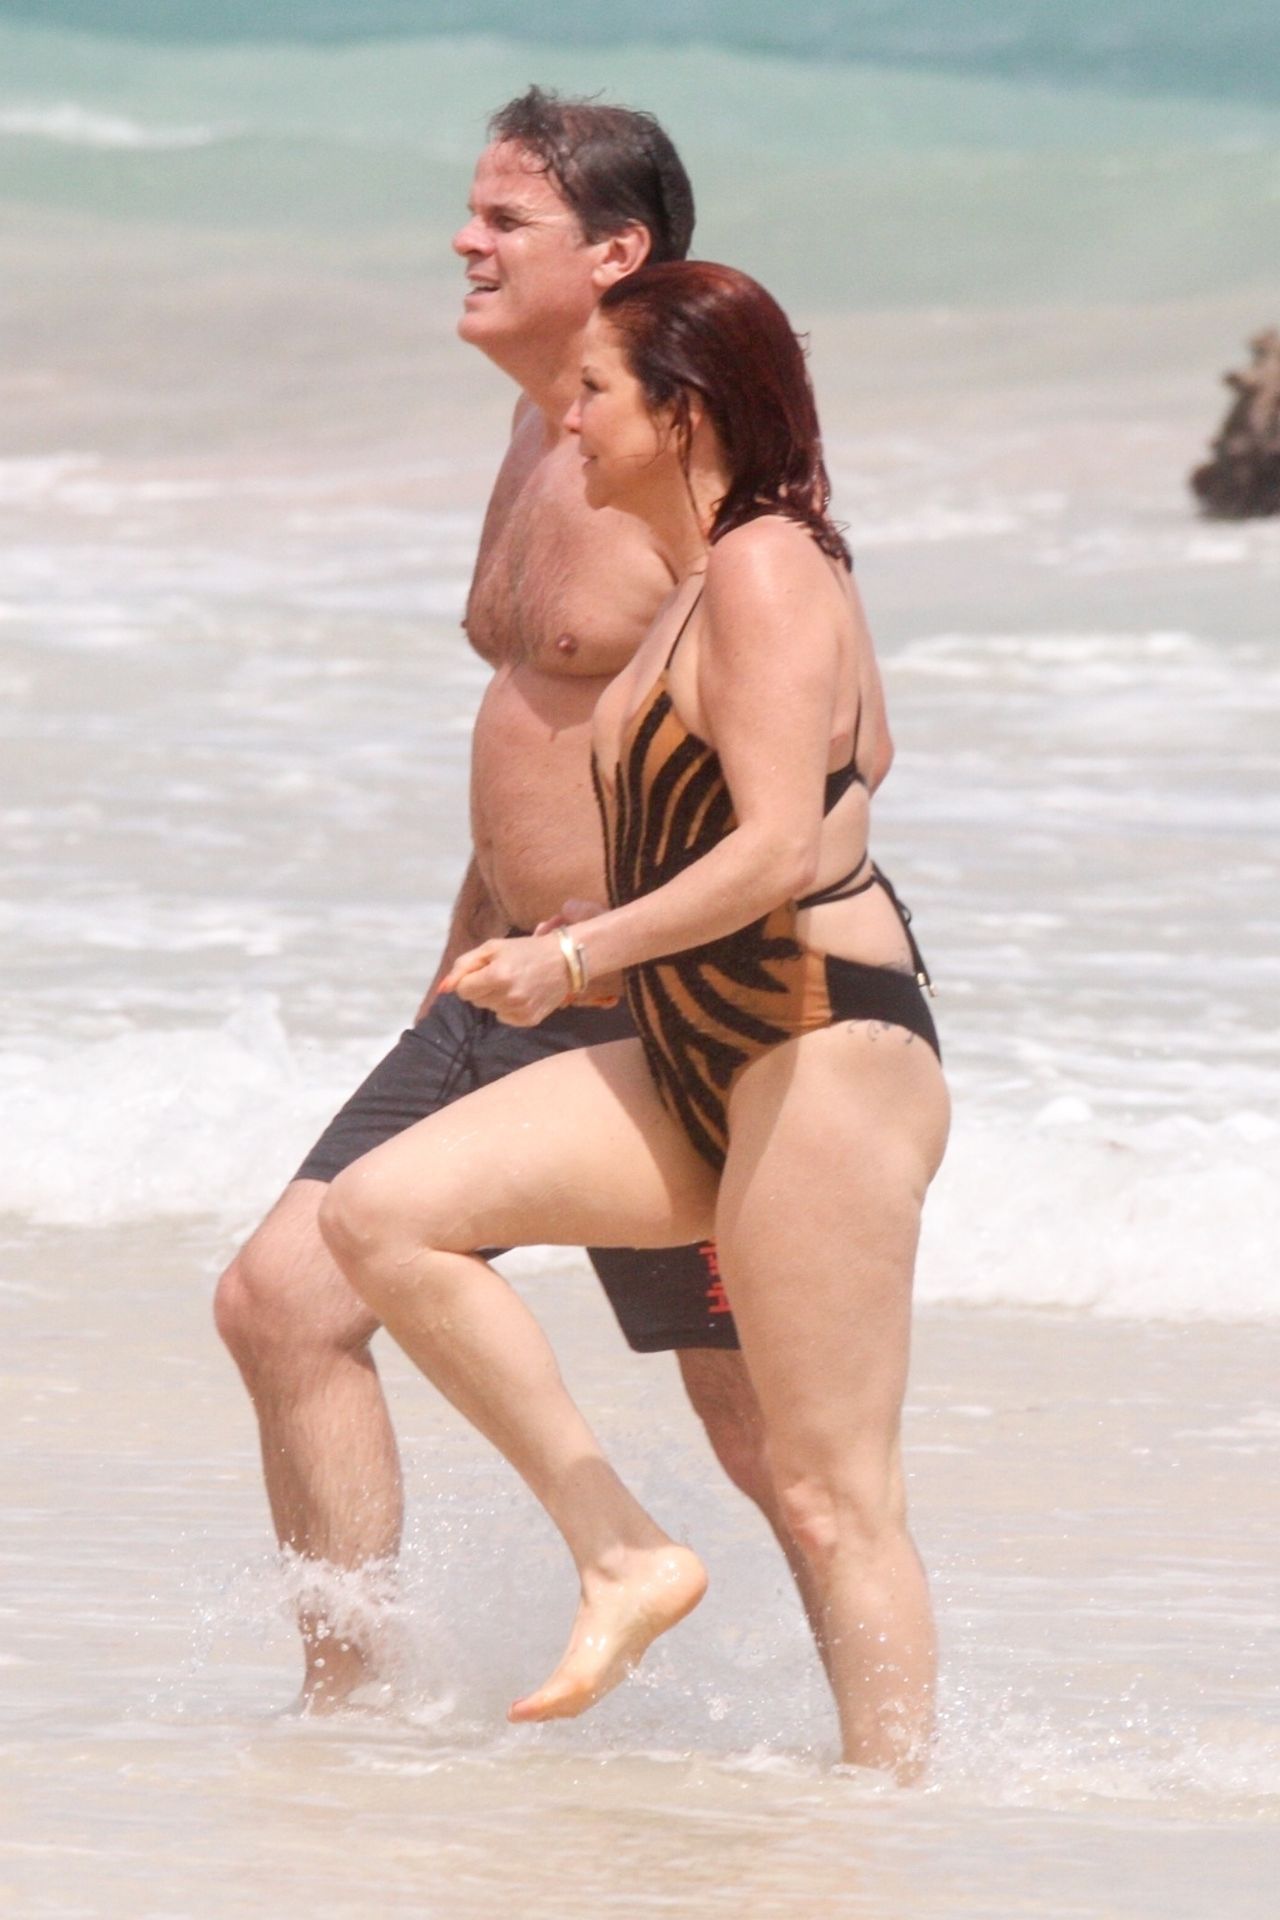 Slashs Ex-Wife Perla Ferrar is Living Life on the Beach (32 Photos)